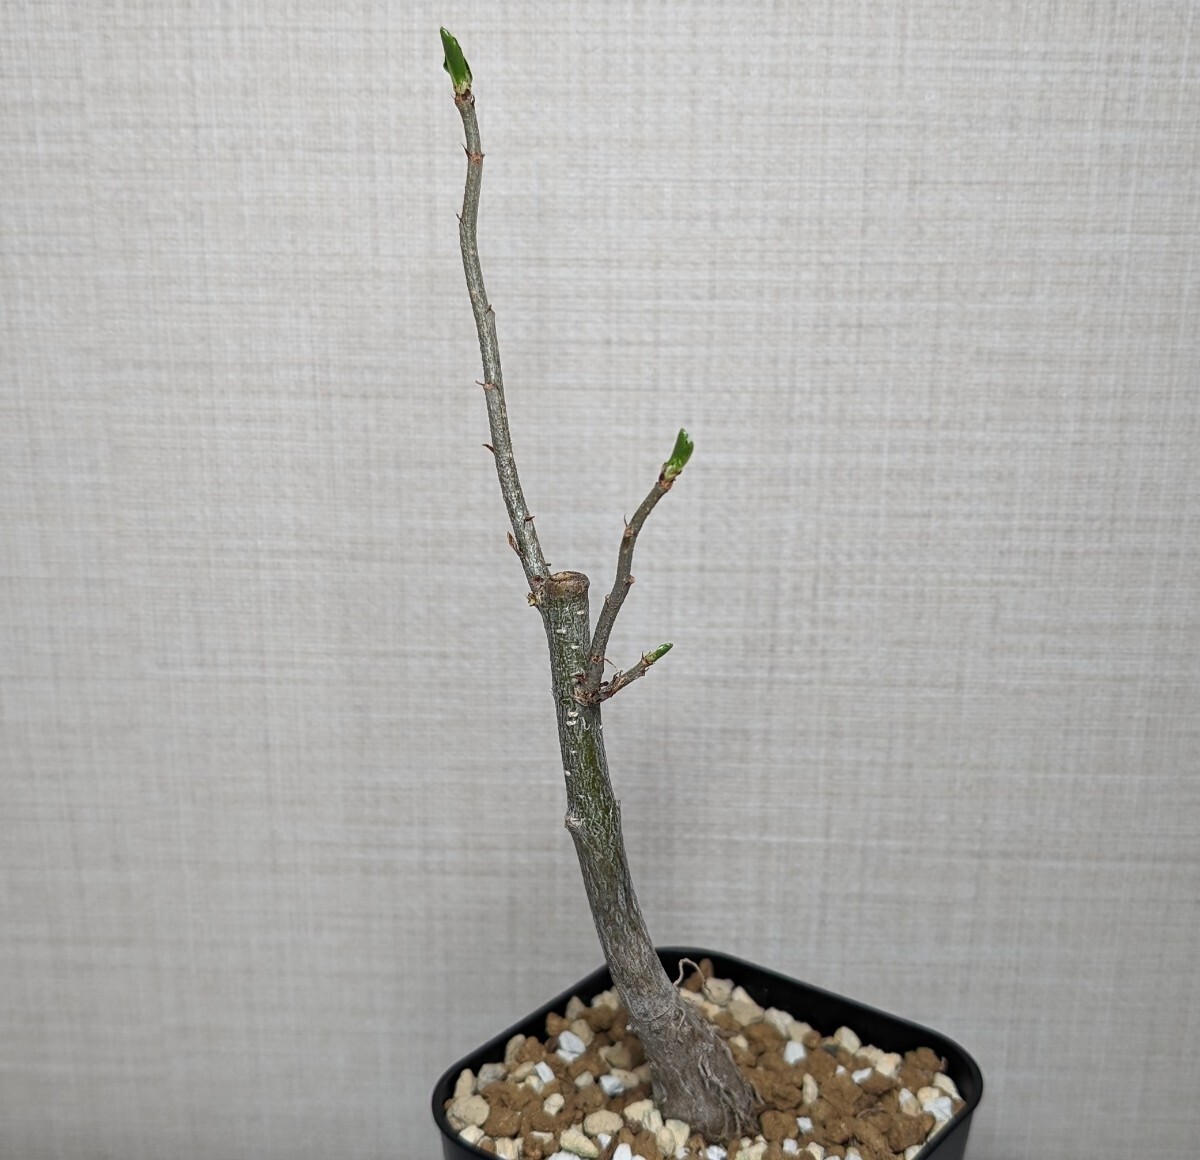 アダンソニア ディギタータ【Adansonia digitata】コーデックス 塊根植物 灌木 多肉植物 サボテン バオバブてんかいの画像2